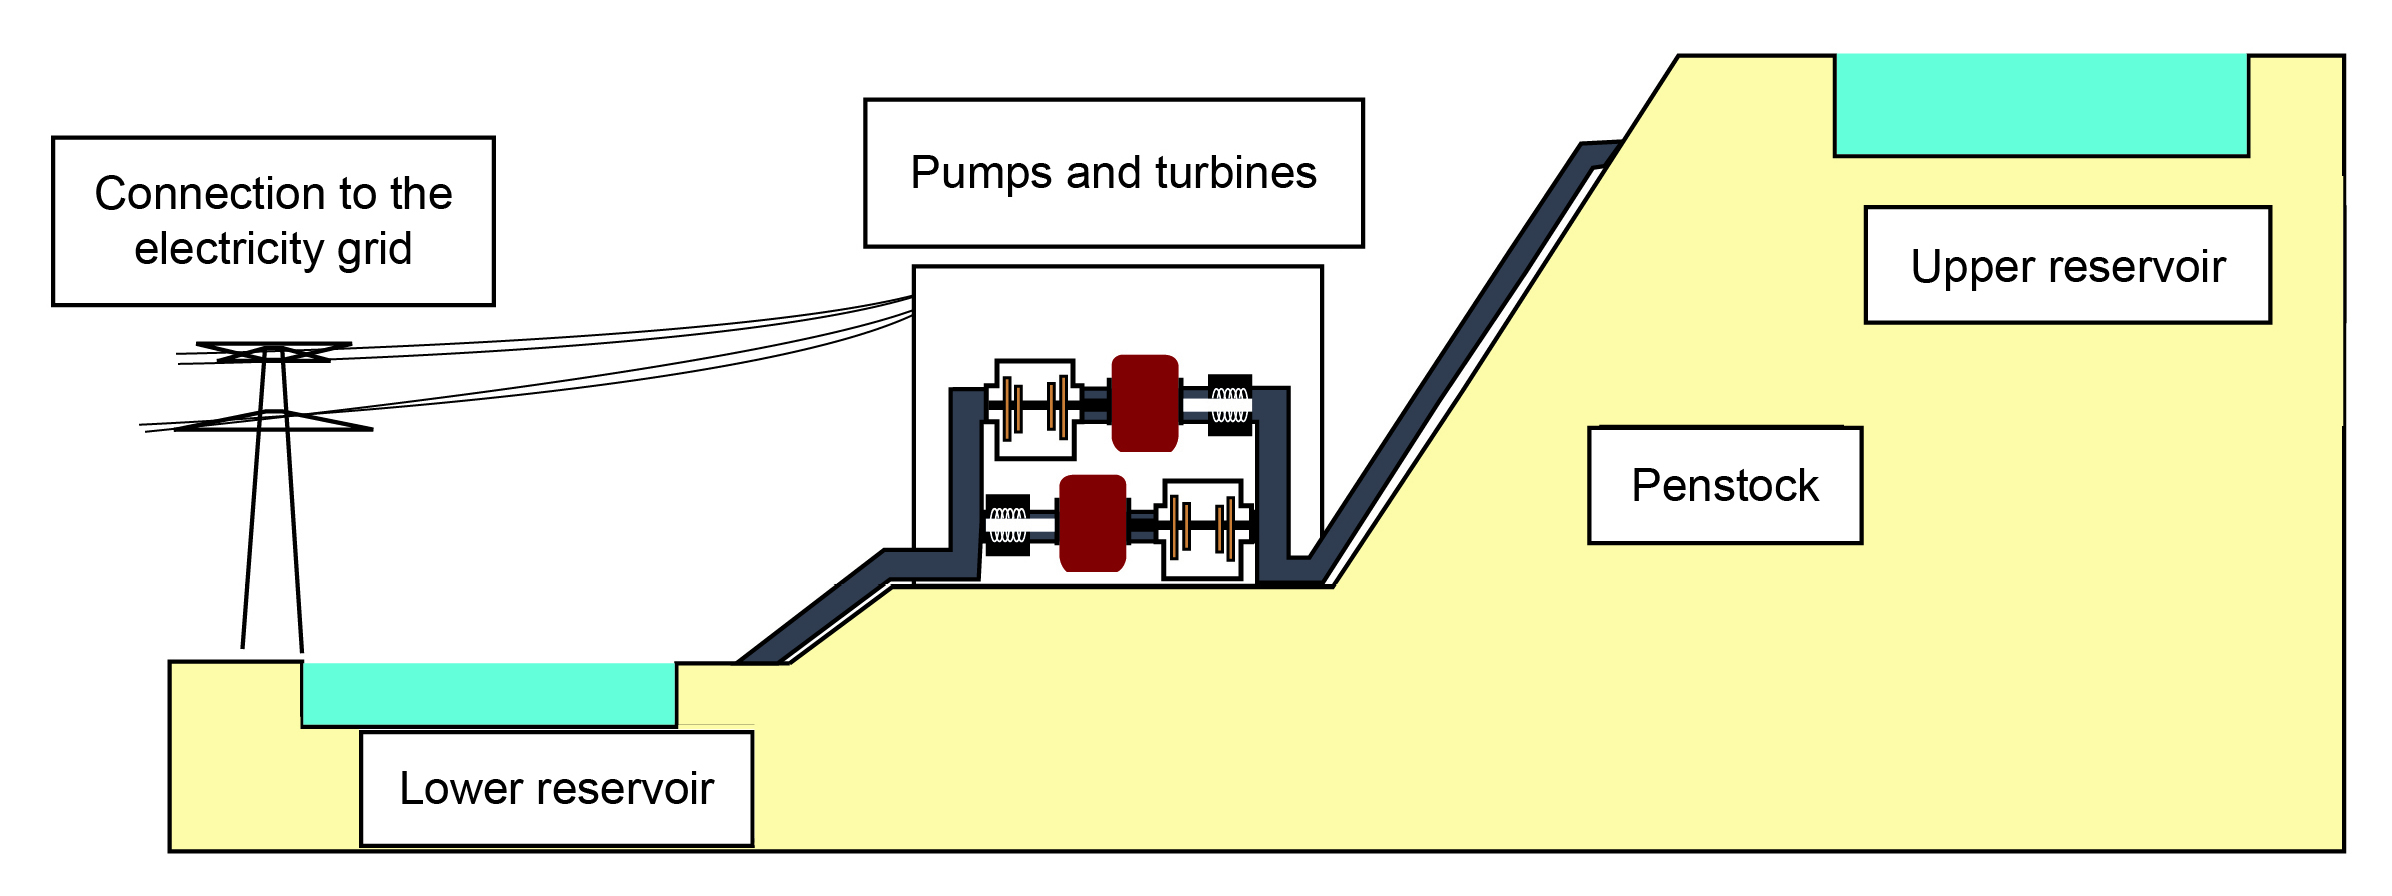 Schema explaining how Pumped-Storage Power Plants work